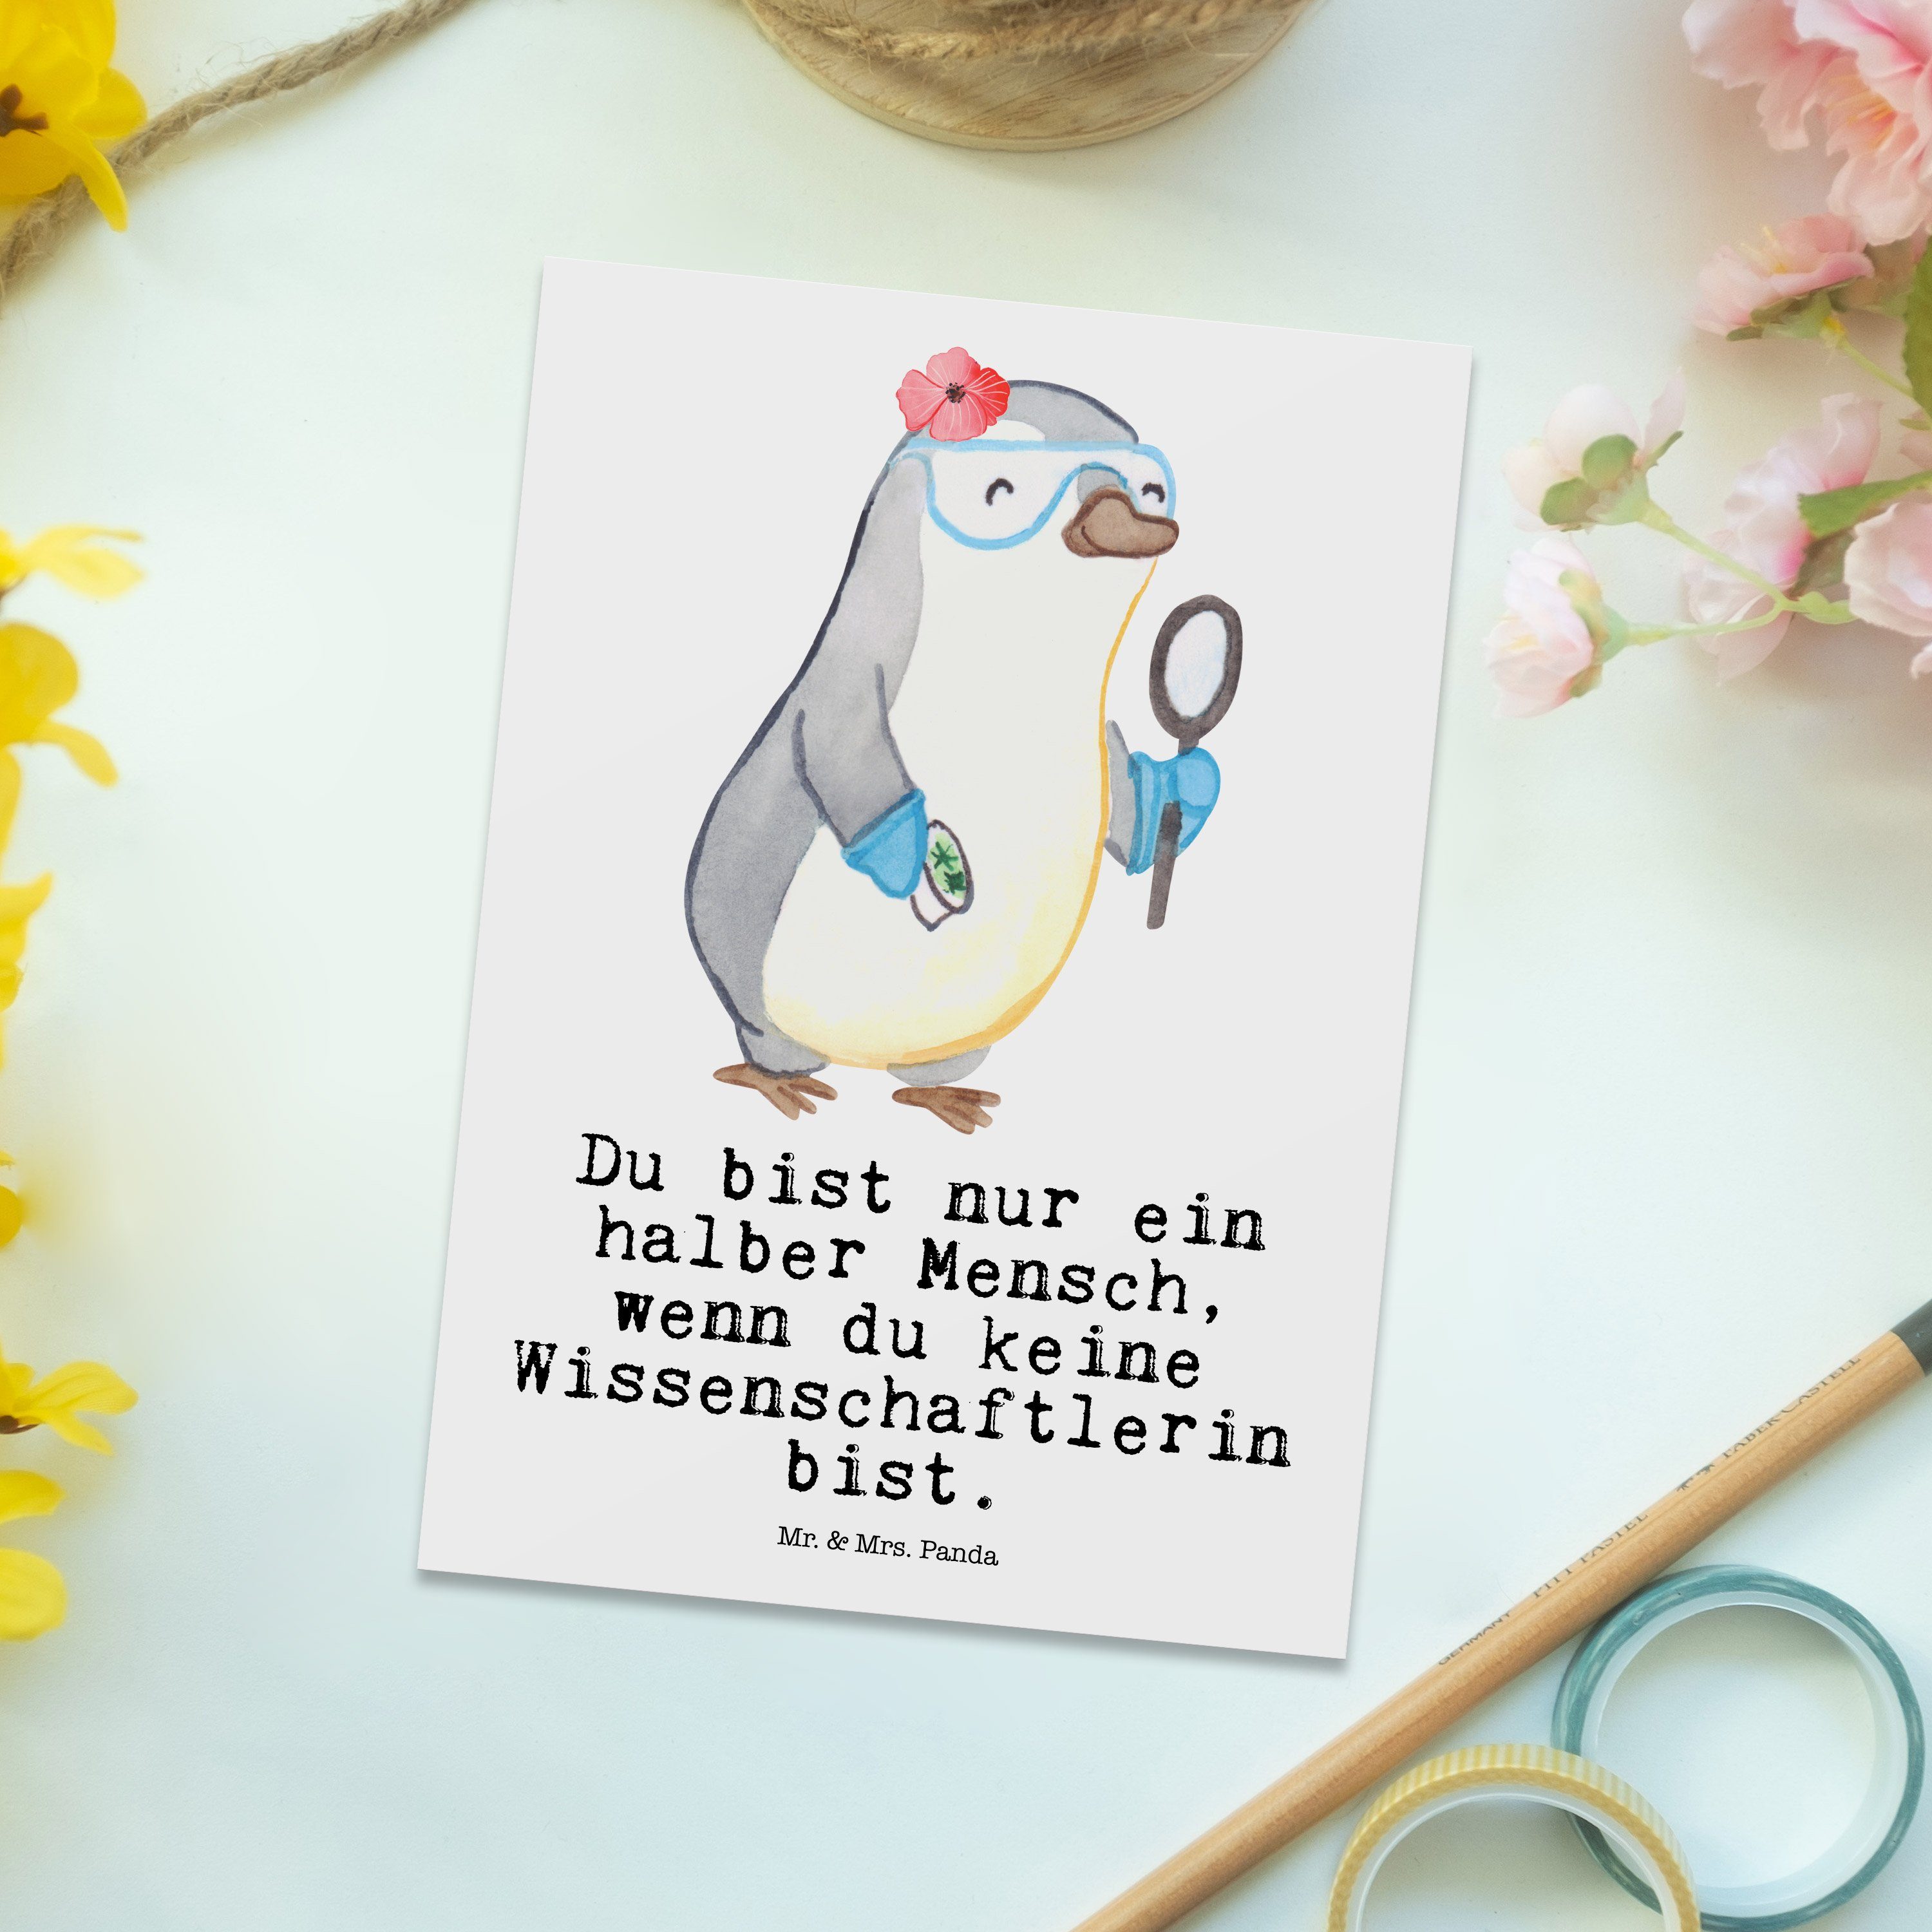 Mr. Herz Wissenschaftlerin Weiß - & Geschenk, - mit Postkarte Panda Mrs. Forschungseinrichtung